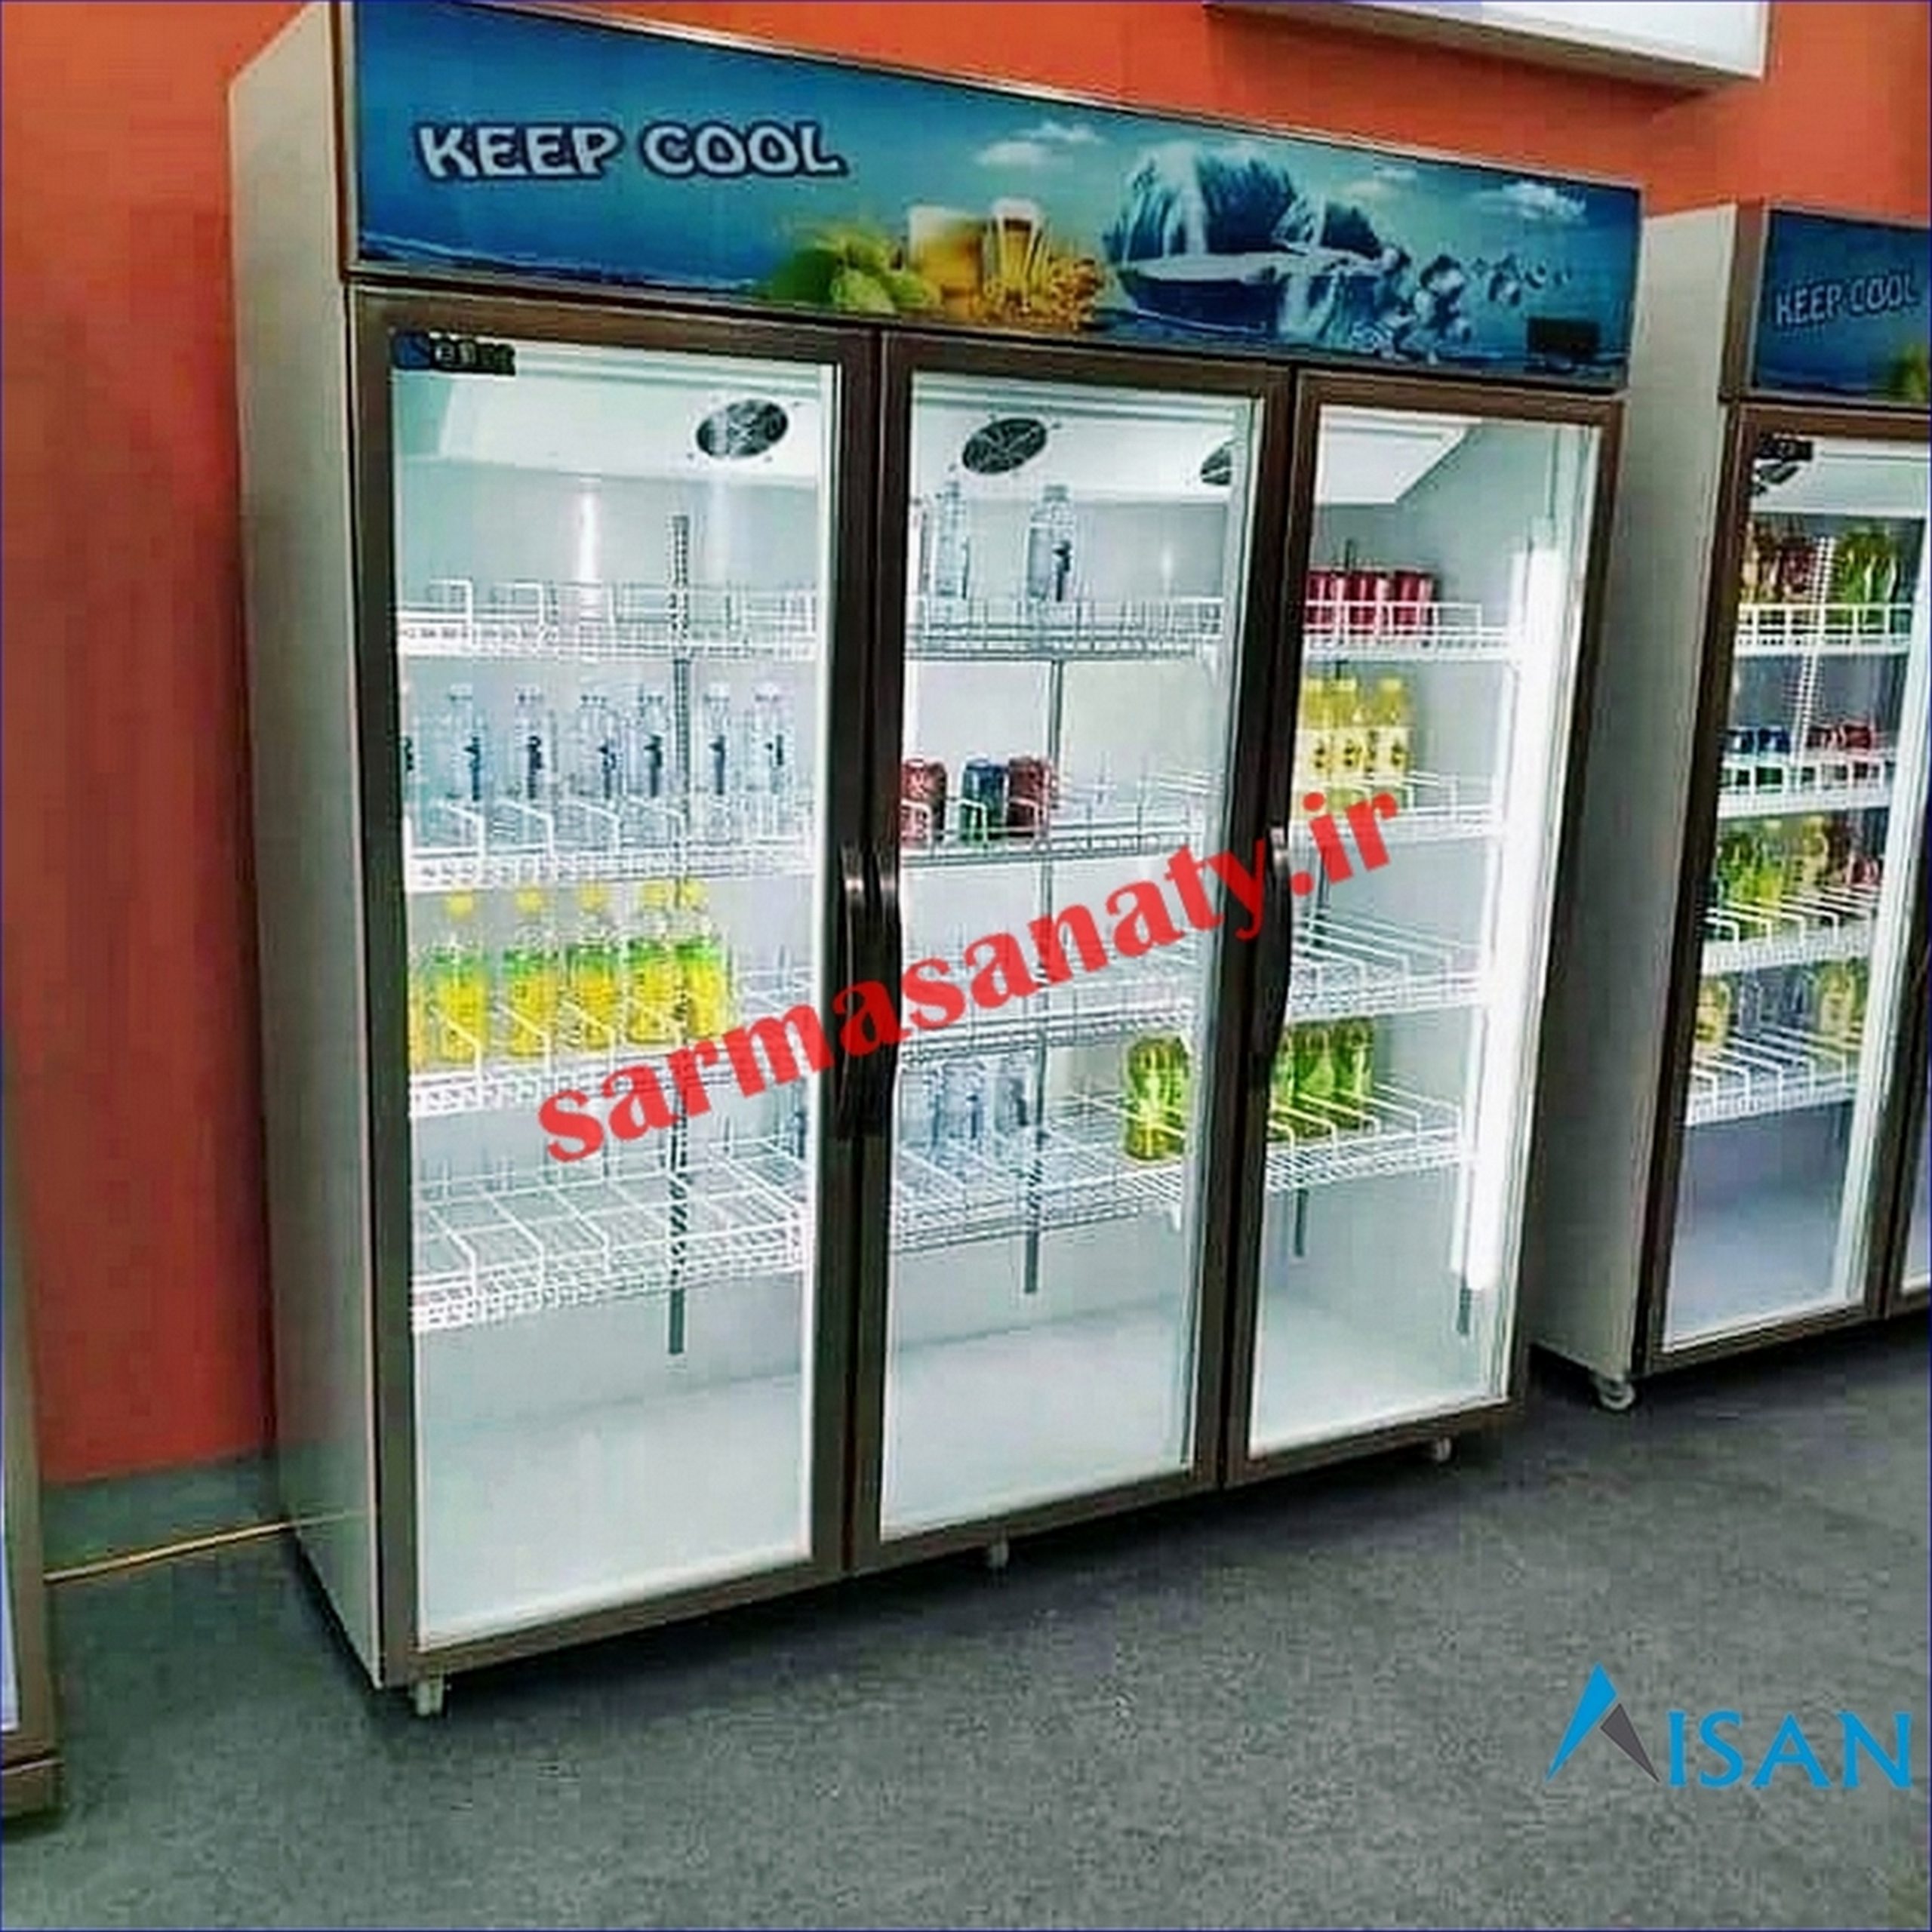 مرکز فروش یخچال ویترینی در تهران با قیمت تولیدی